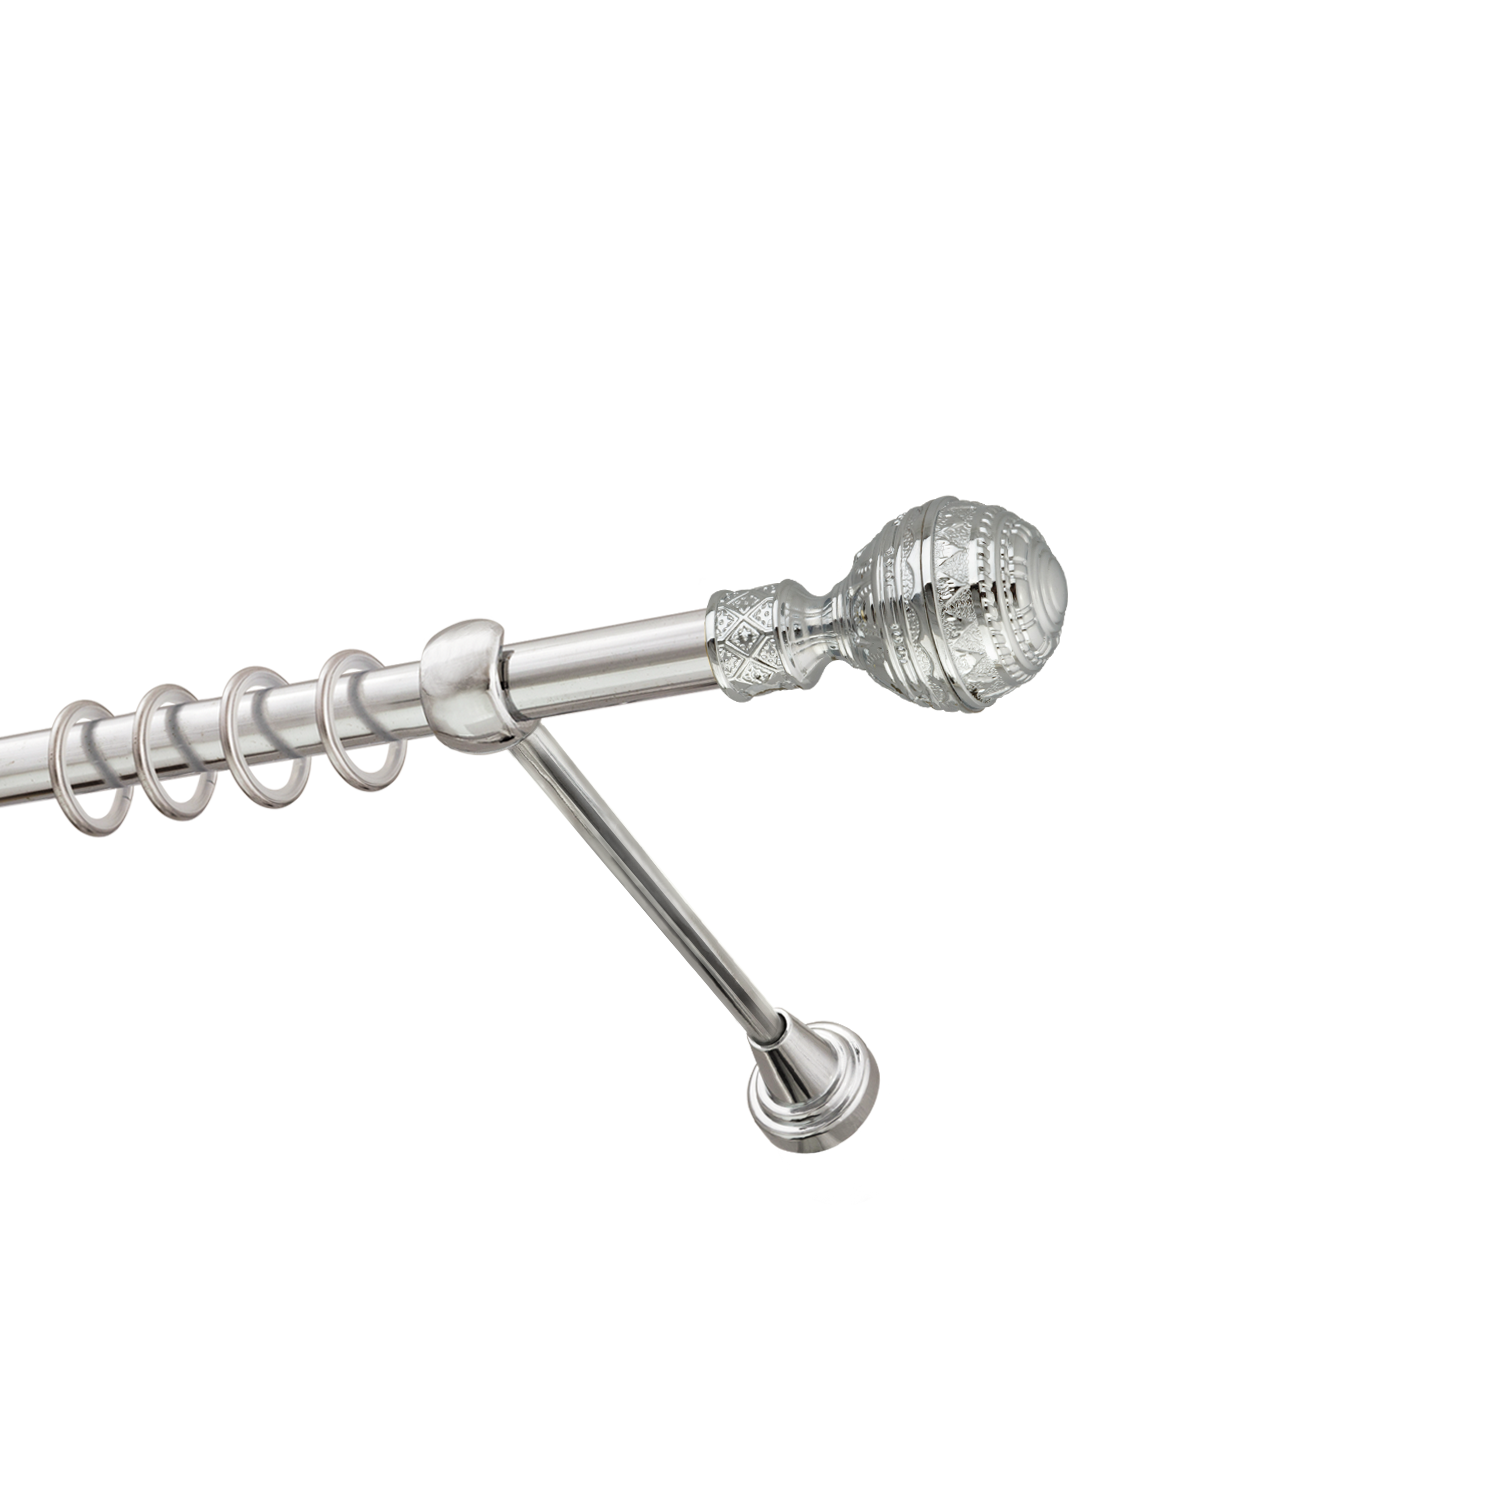 Металлический карниз для штор Роял, однорядный 16 мм, серебро, гладкая штанга, длина 240 см